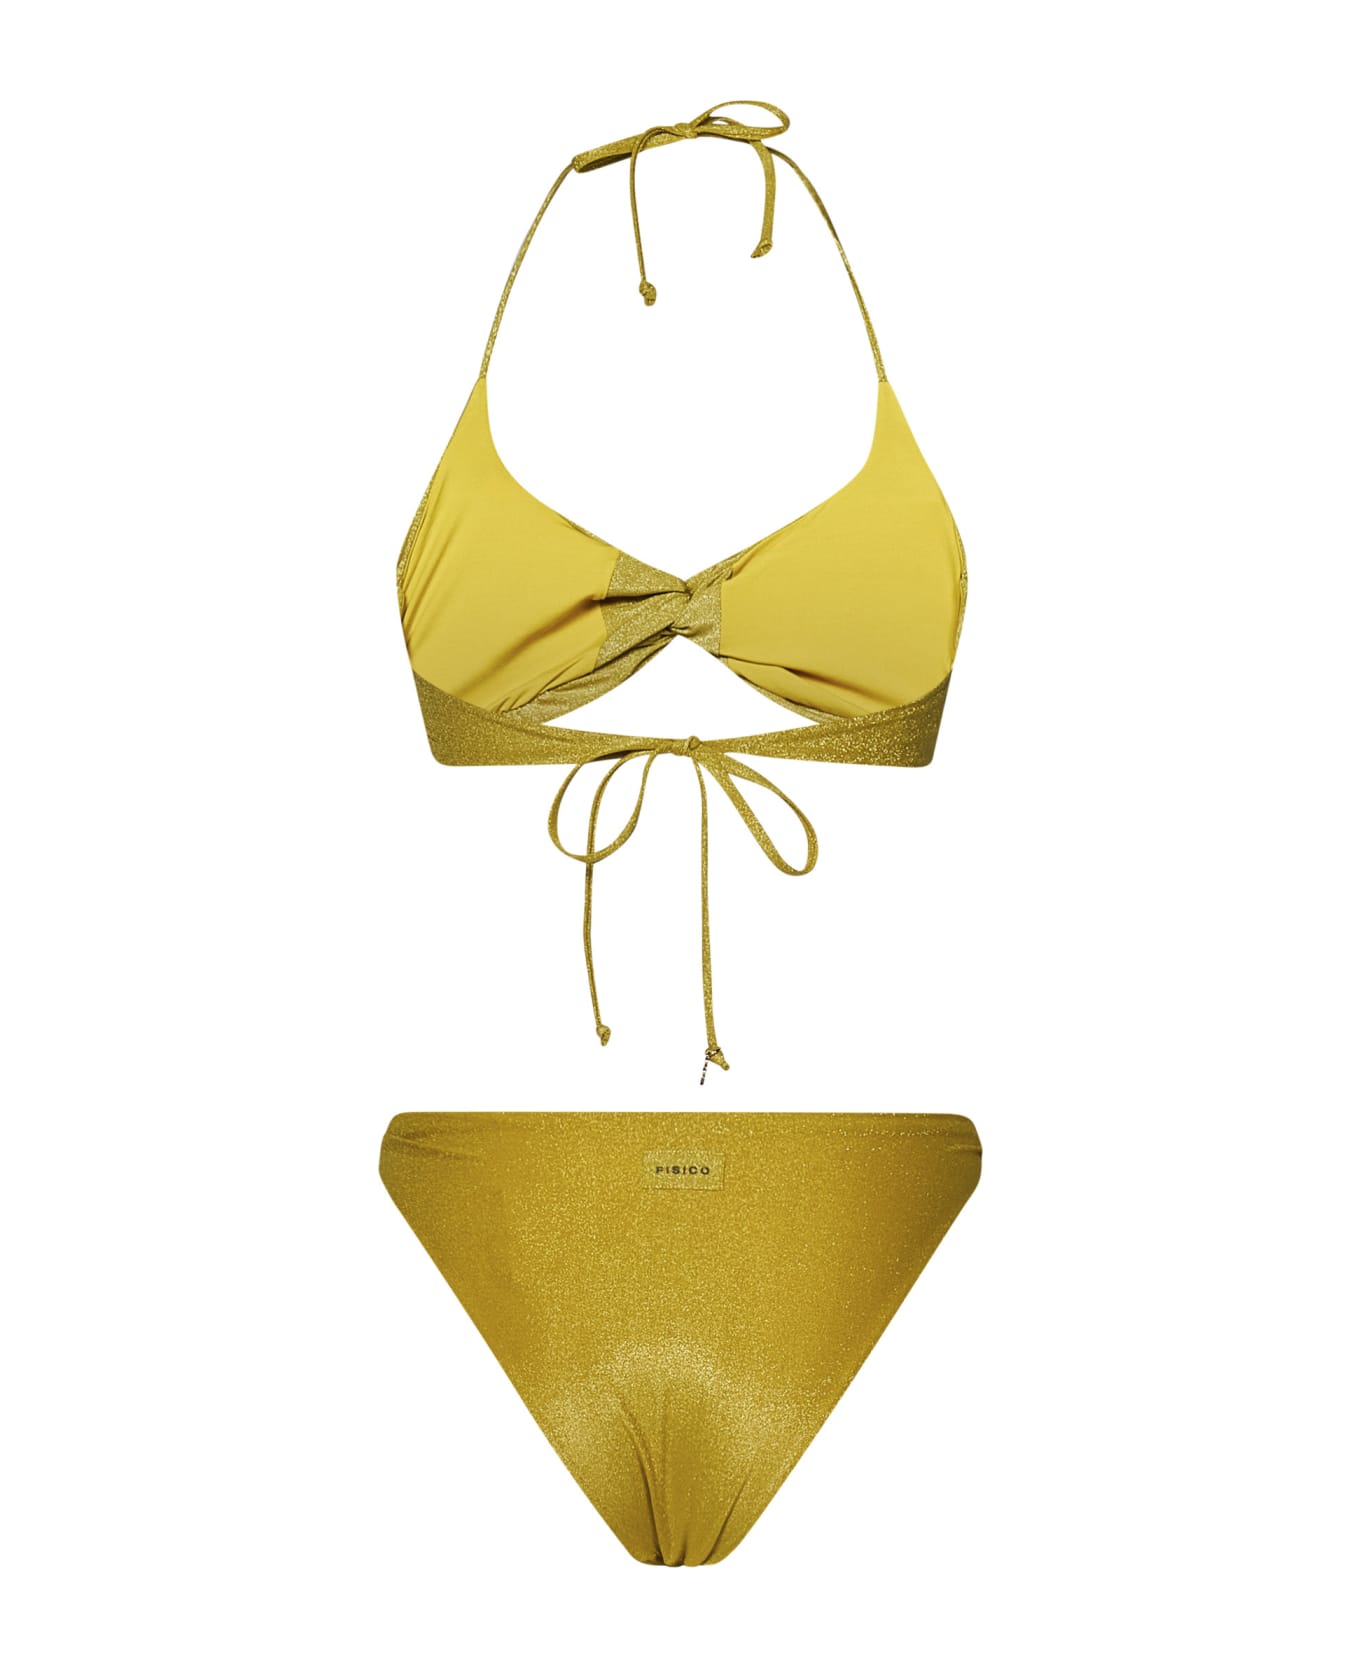 Fisico - Cristina Ferrari Fisico Bikini - Yellow 水着